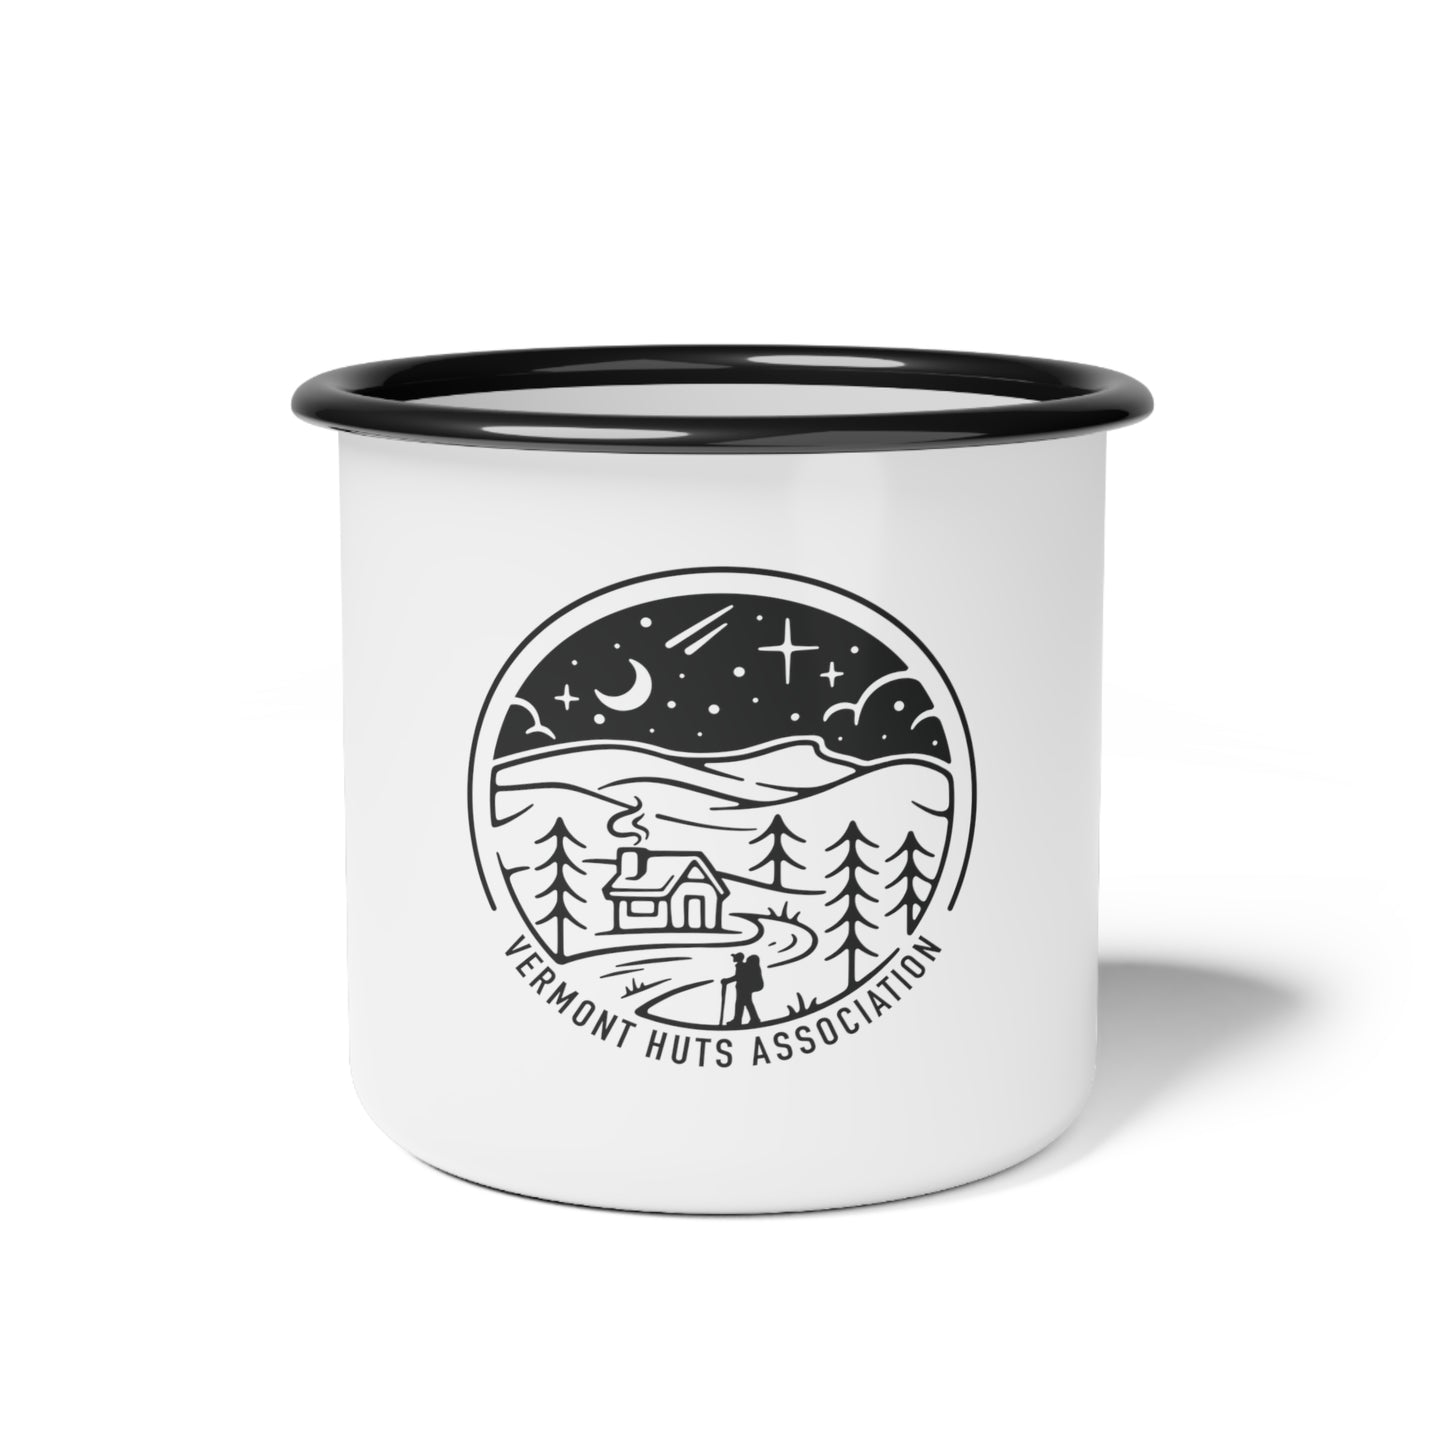 Vermont Huts Camping Mug